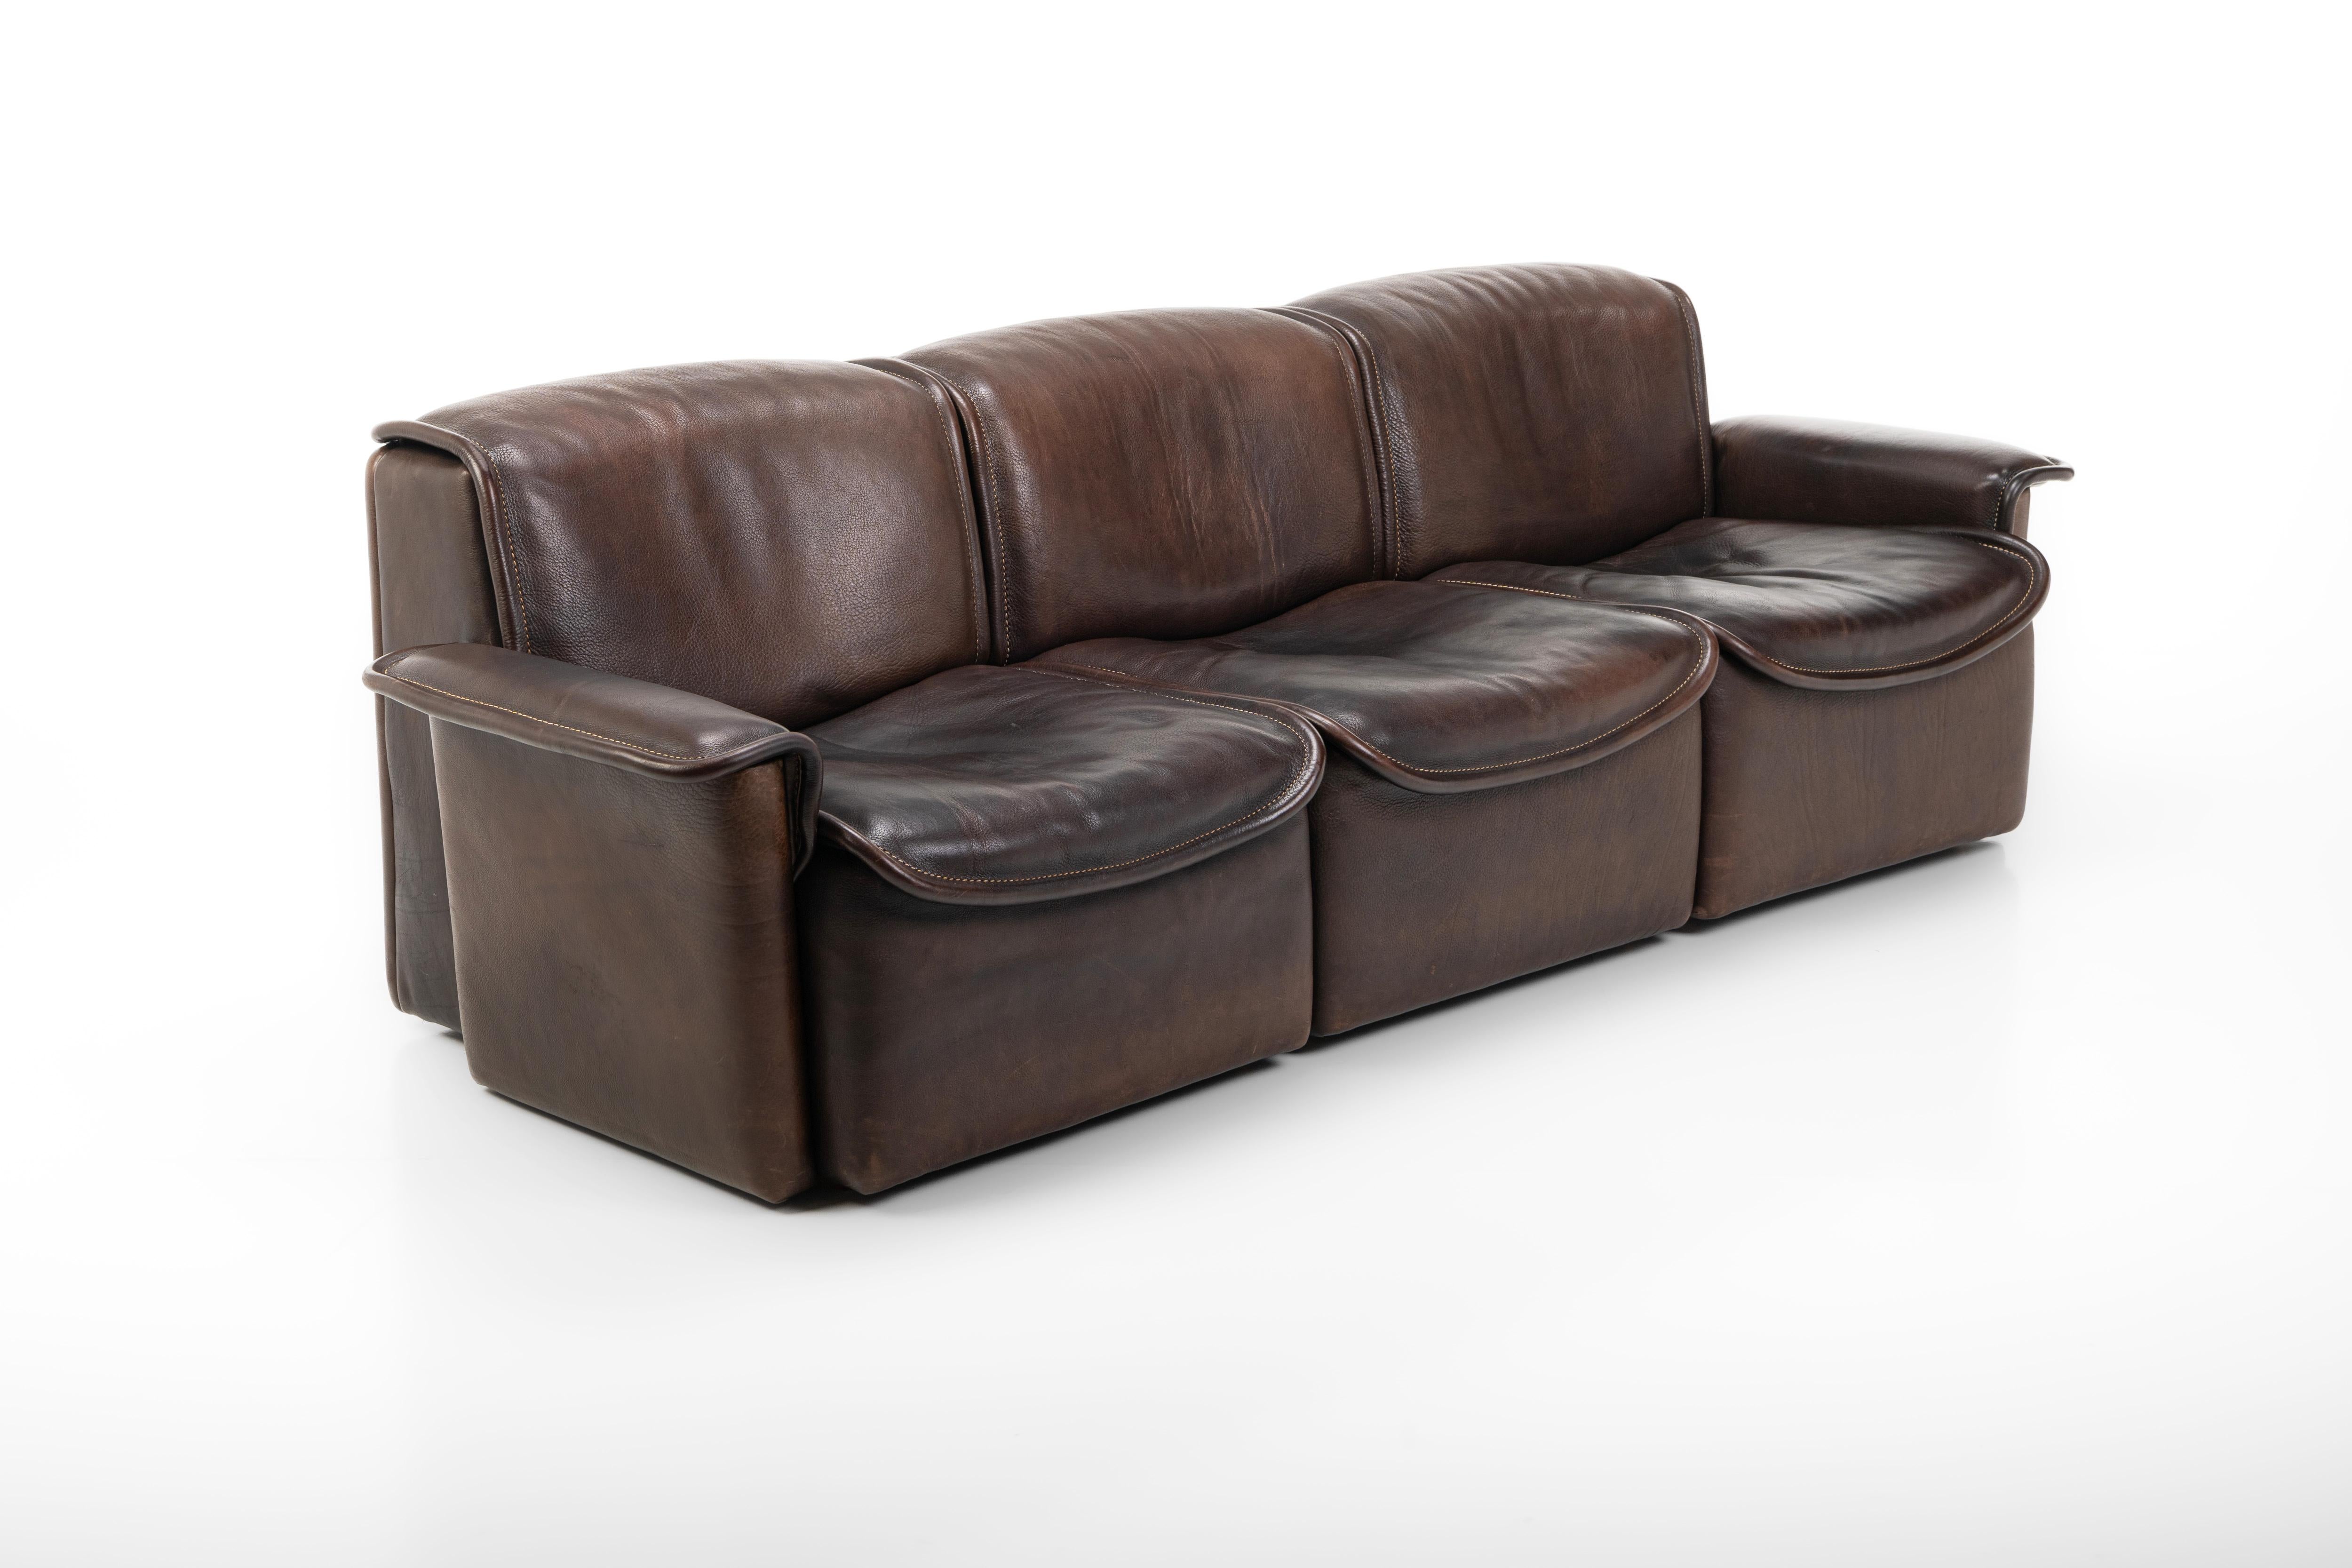 Dieses exquisite, mit dunkelbraunem Büffelnackenleder bezogene Vintage-Sofa präsentiert das Modell DS12 aus den 1970er Jahren, das von dem Schweizer Designkollektiv Team De Sede entworfen wurde. Ein Set aus zwei Sesseln ist ebenfalls